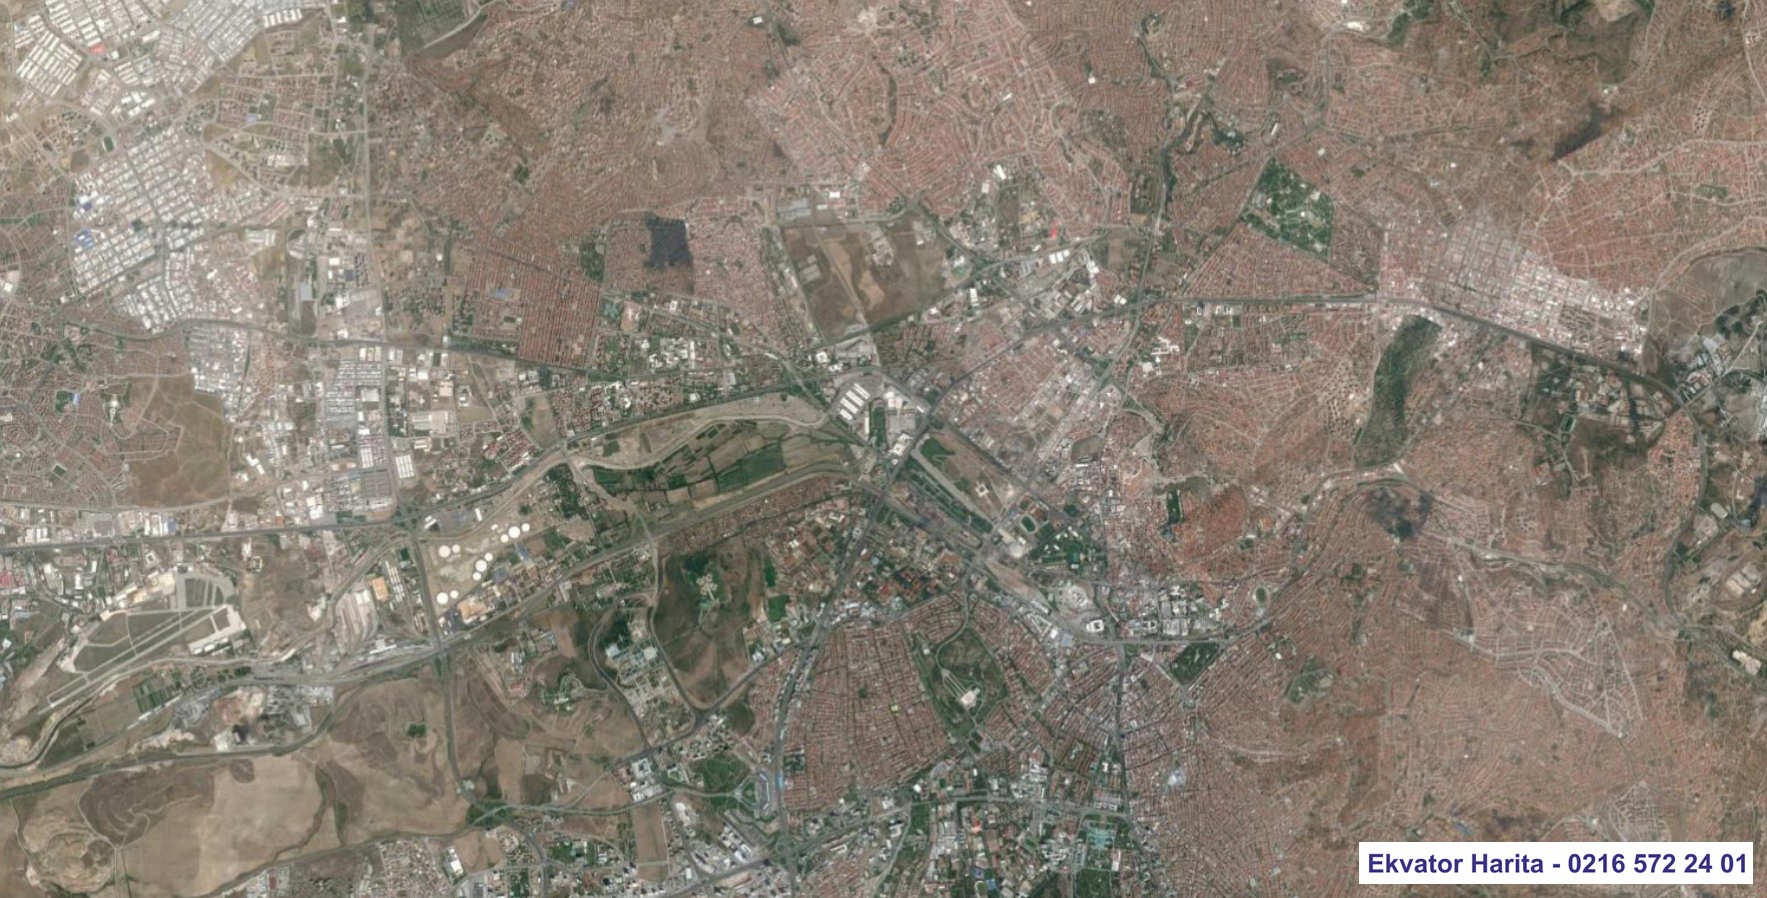 Ankara Uydu Haritası Örnek Fotoğrafı